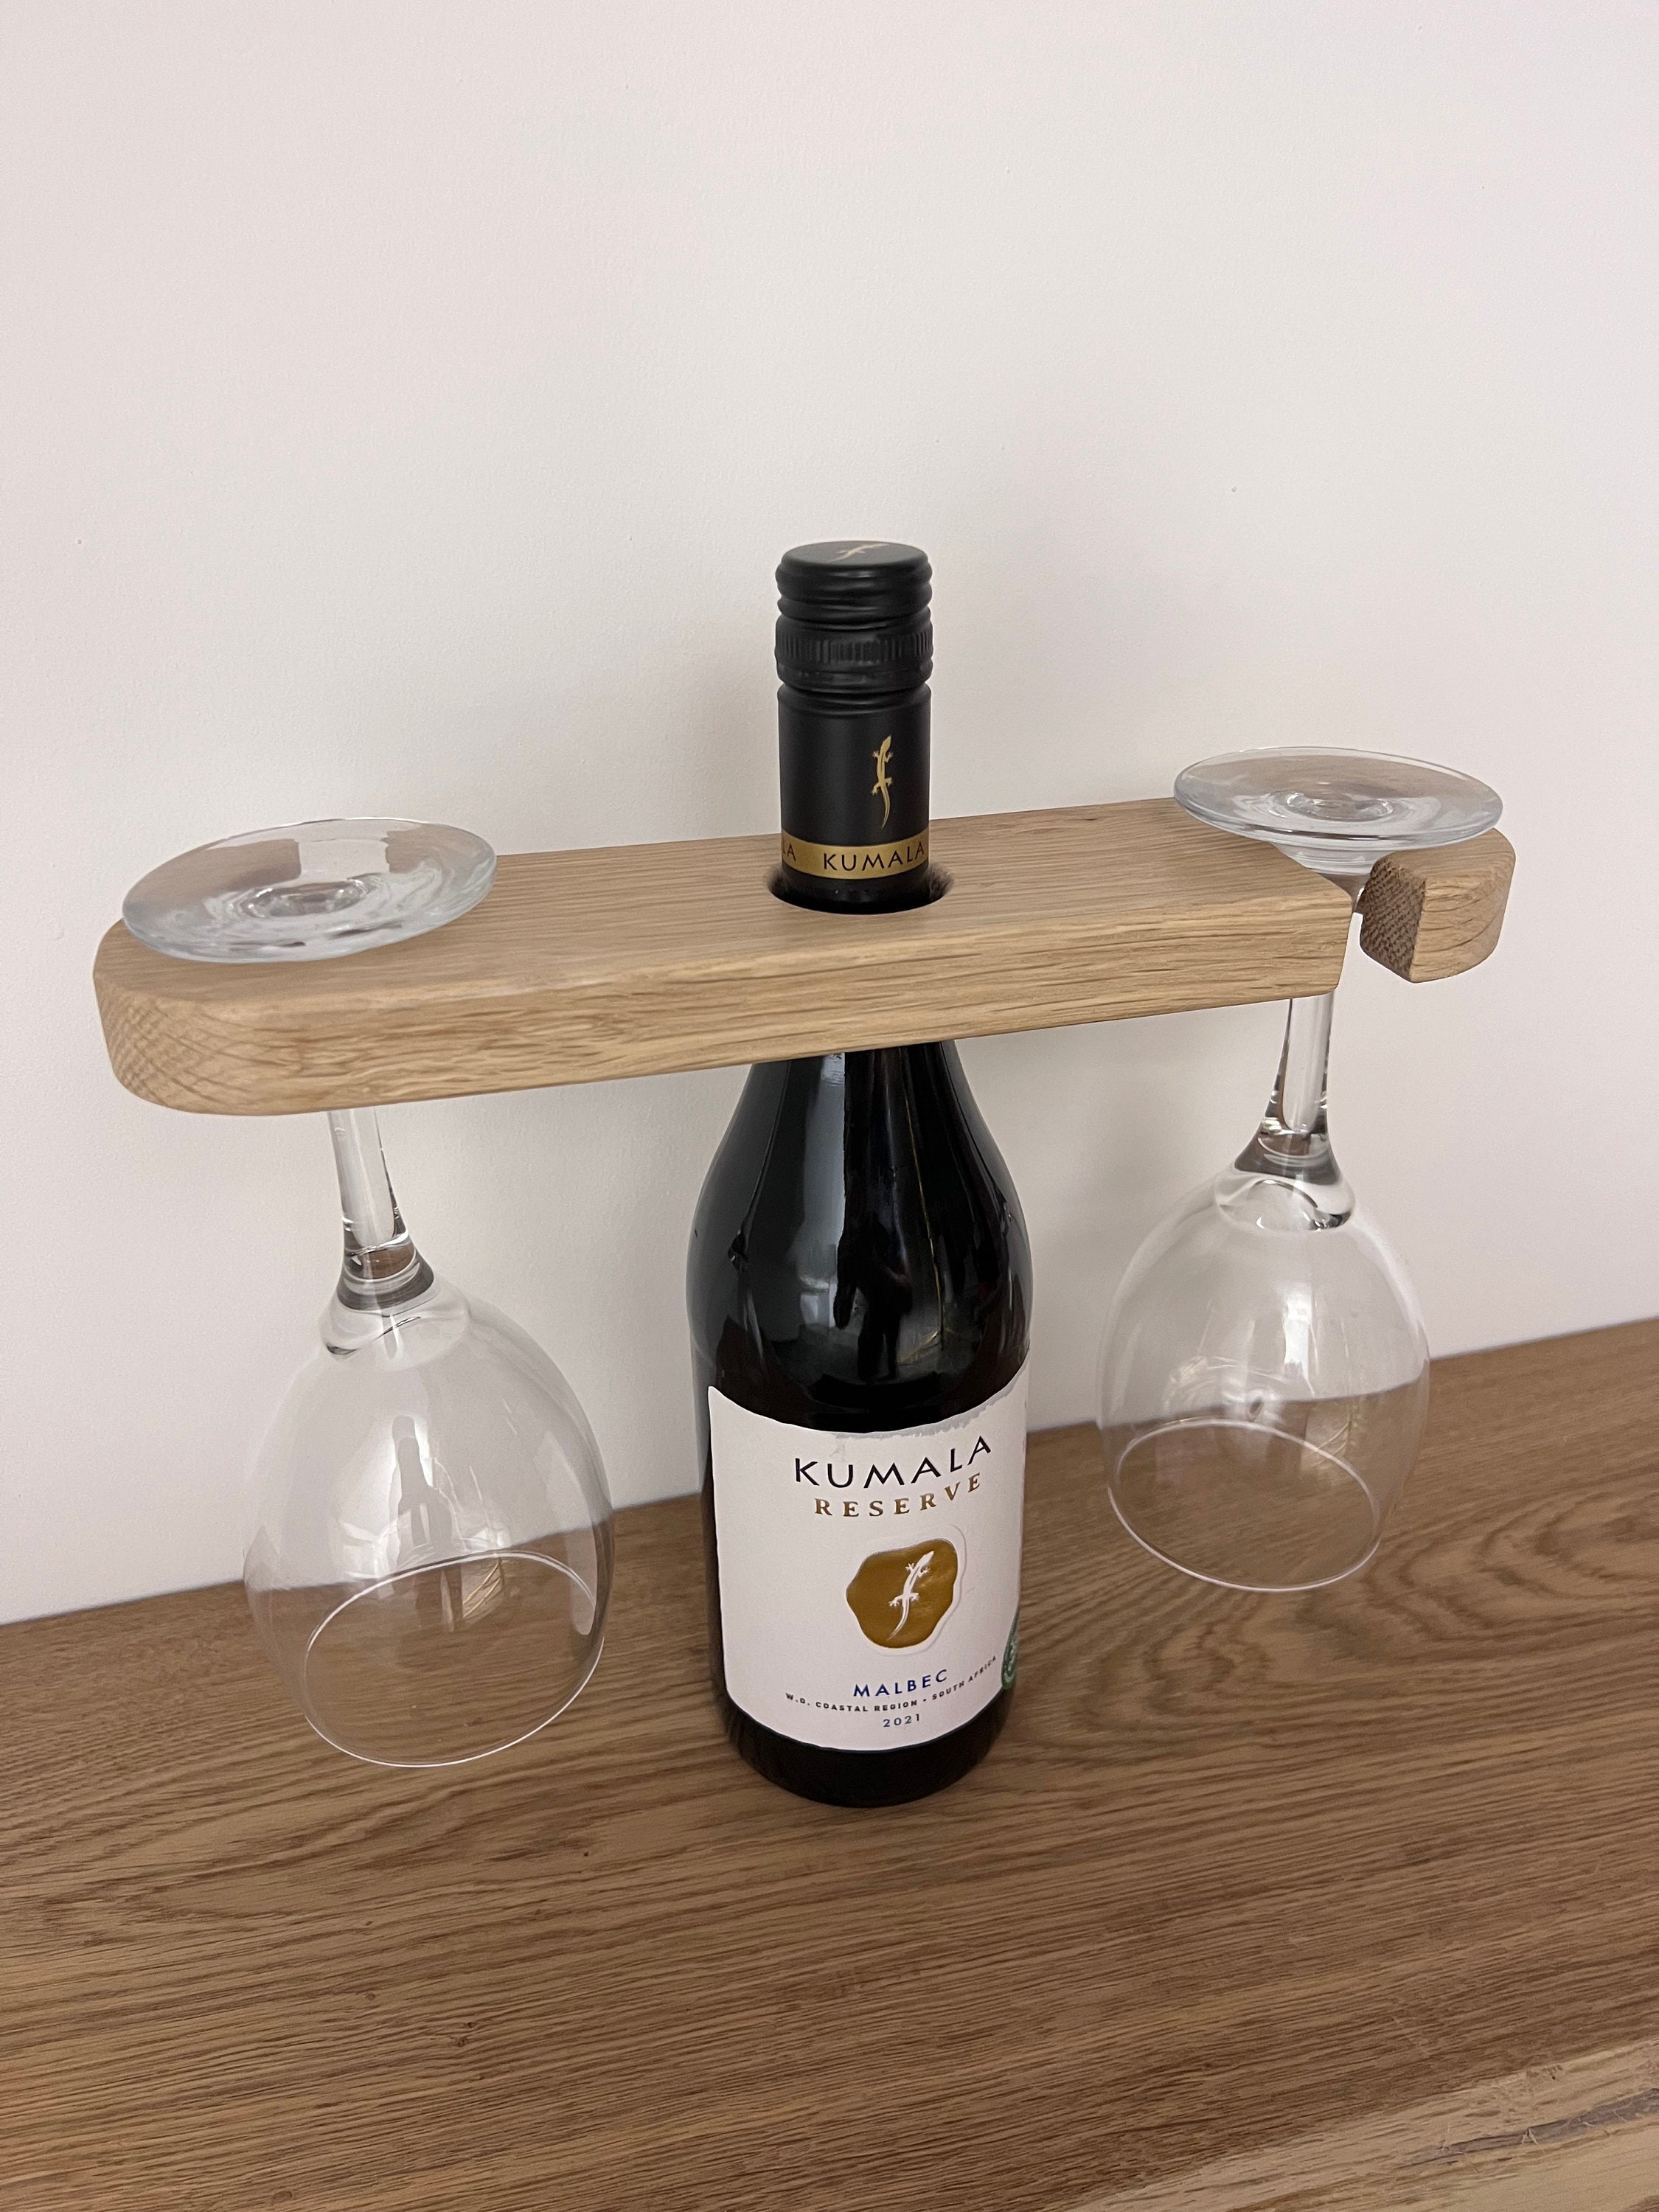 bouteille de vin et porte-verres en bois chêne/noyer/olivier faits à la main pour deux